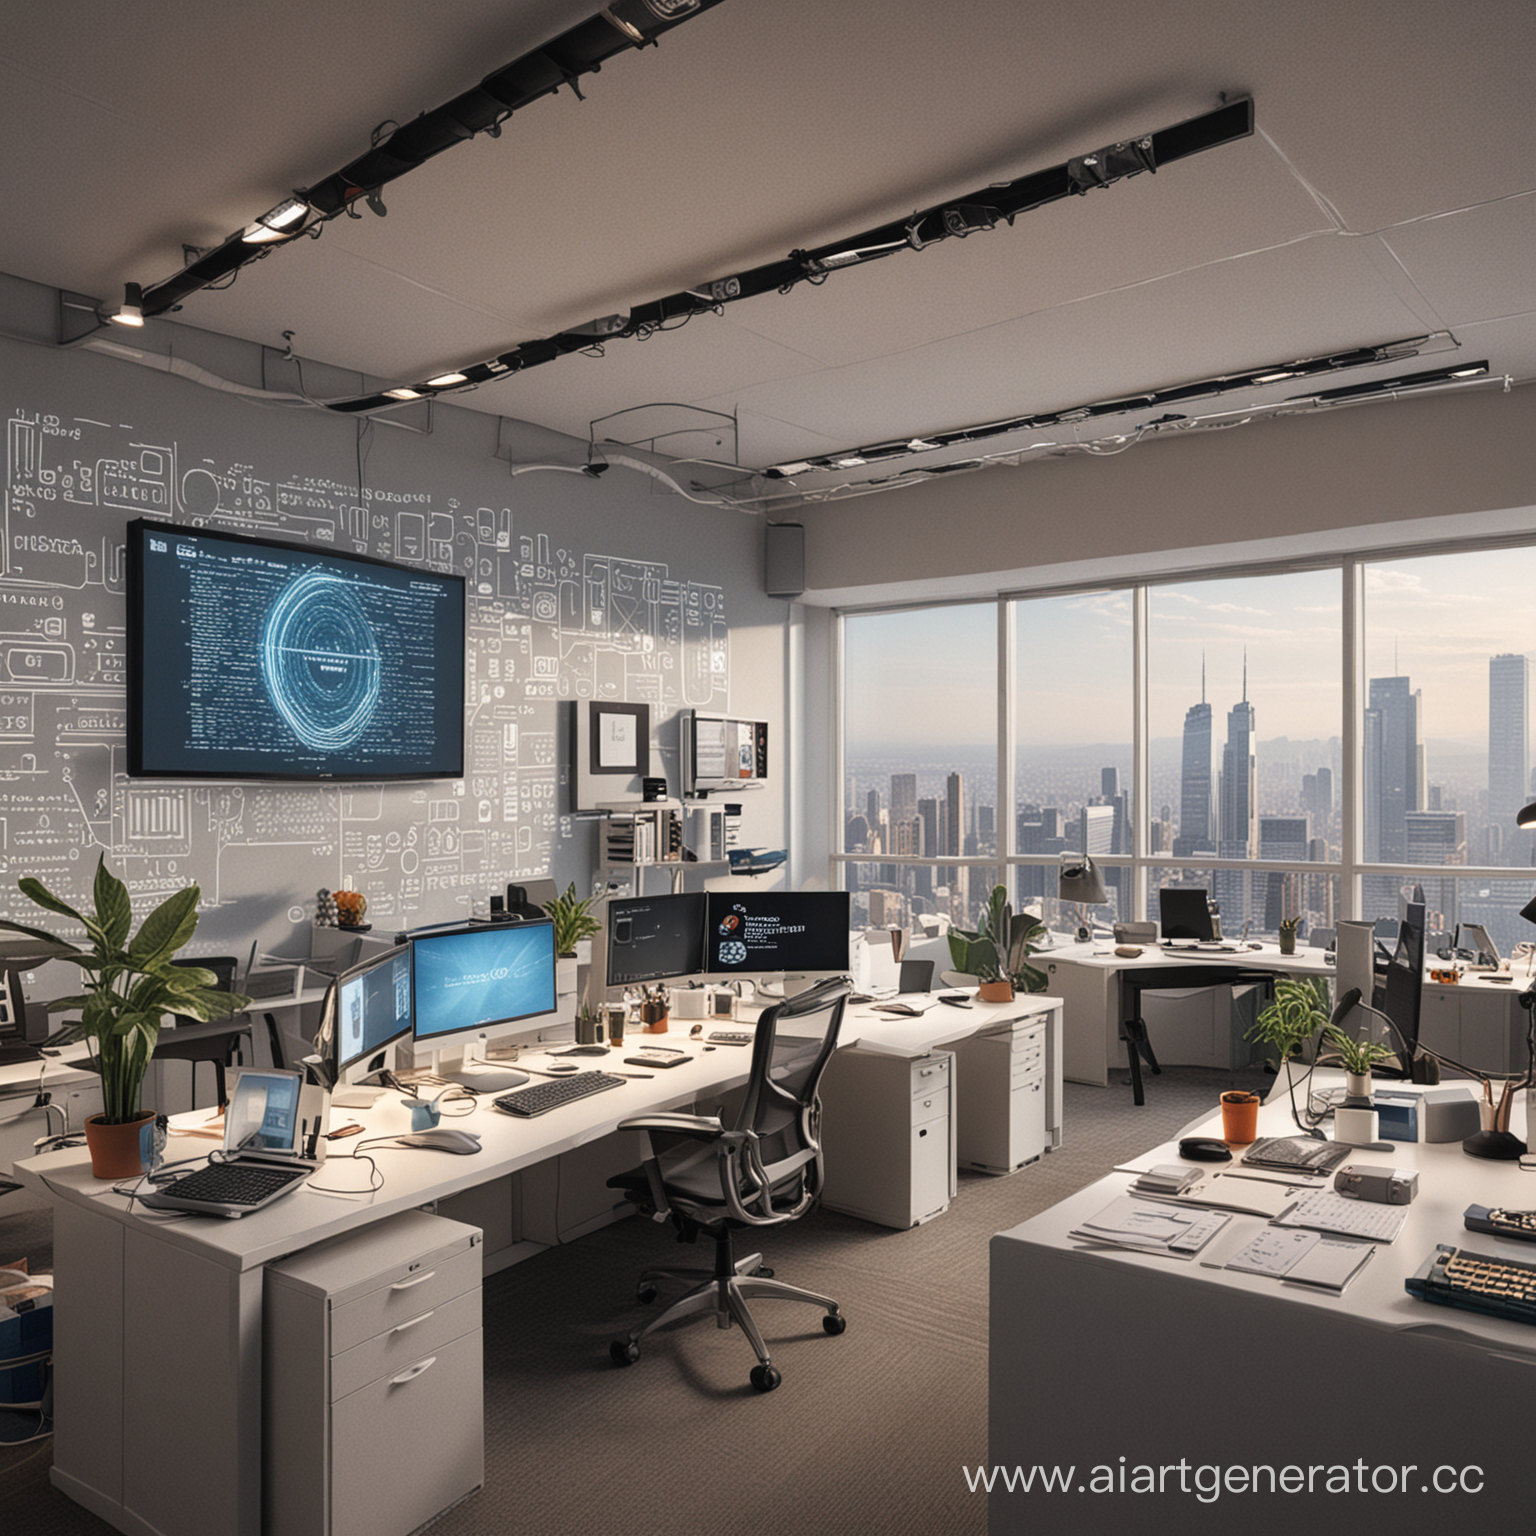 офис по программированию 2050 года